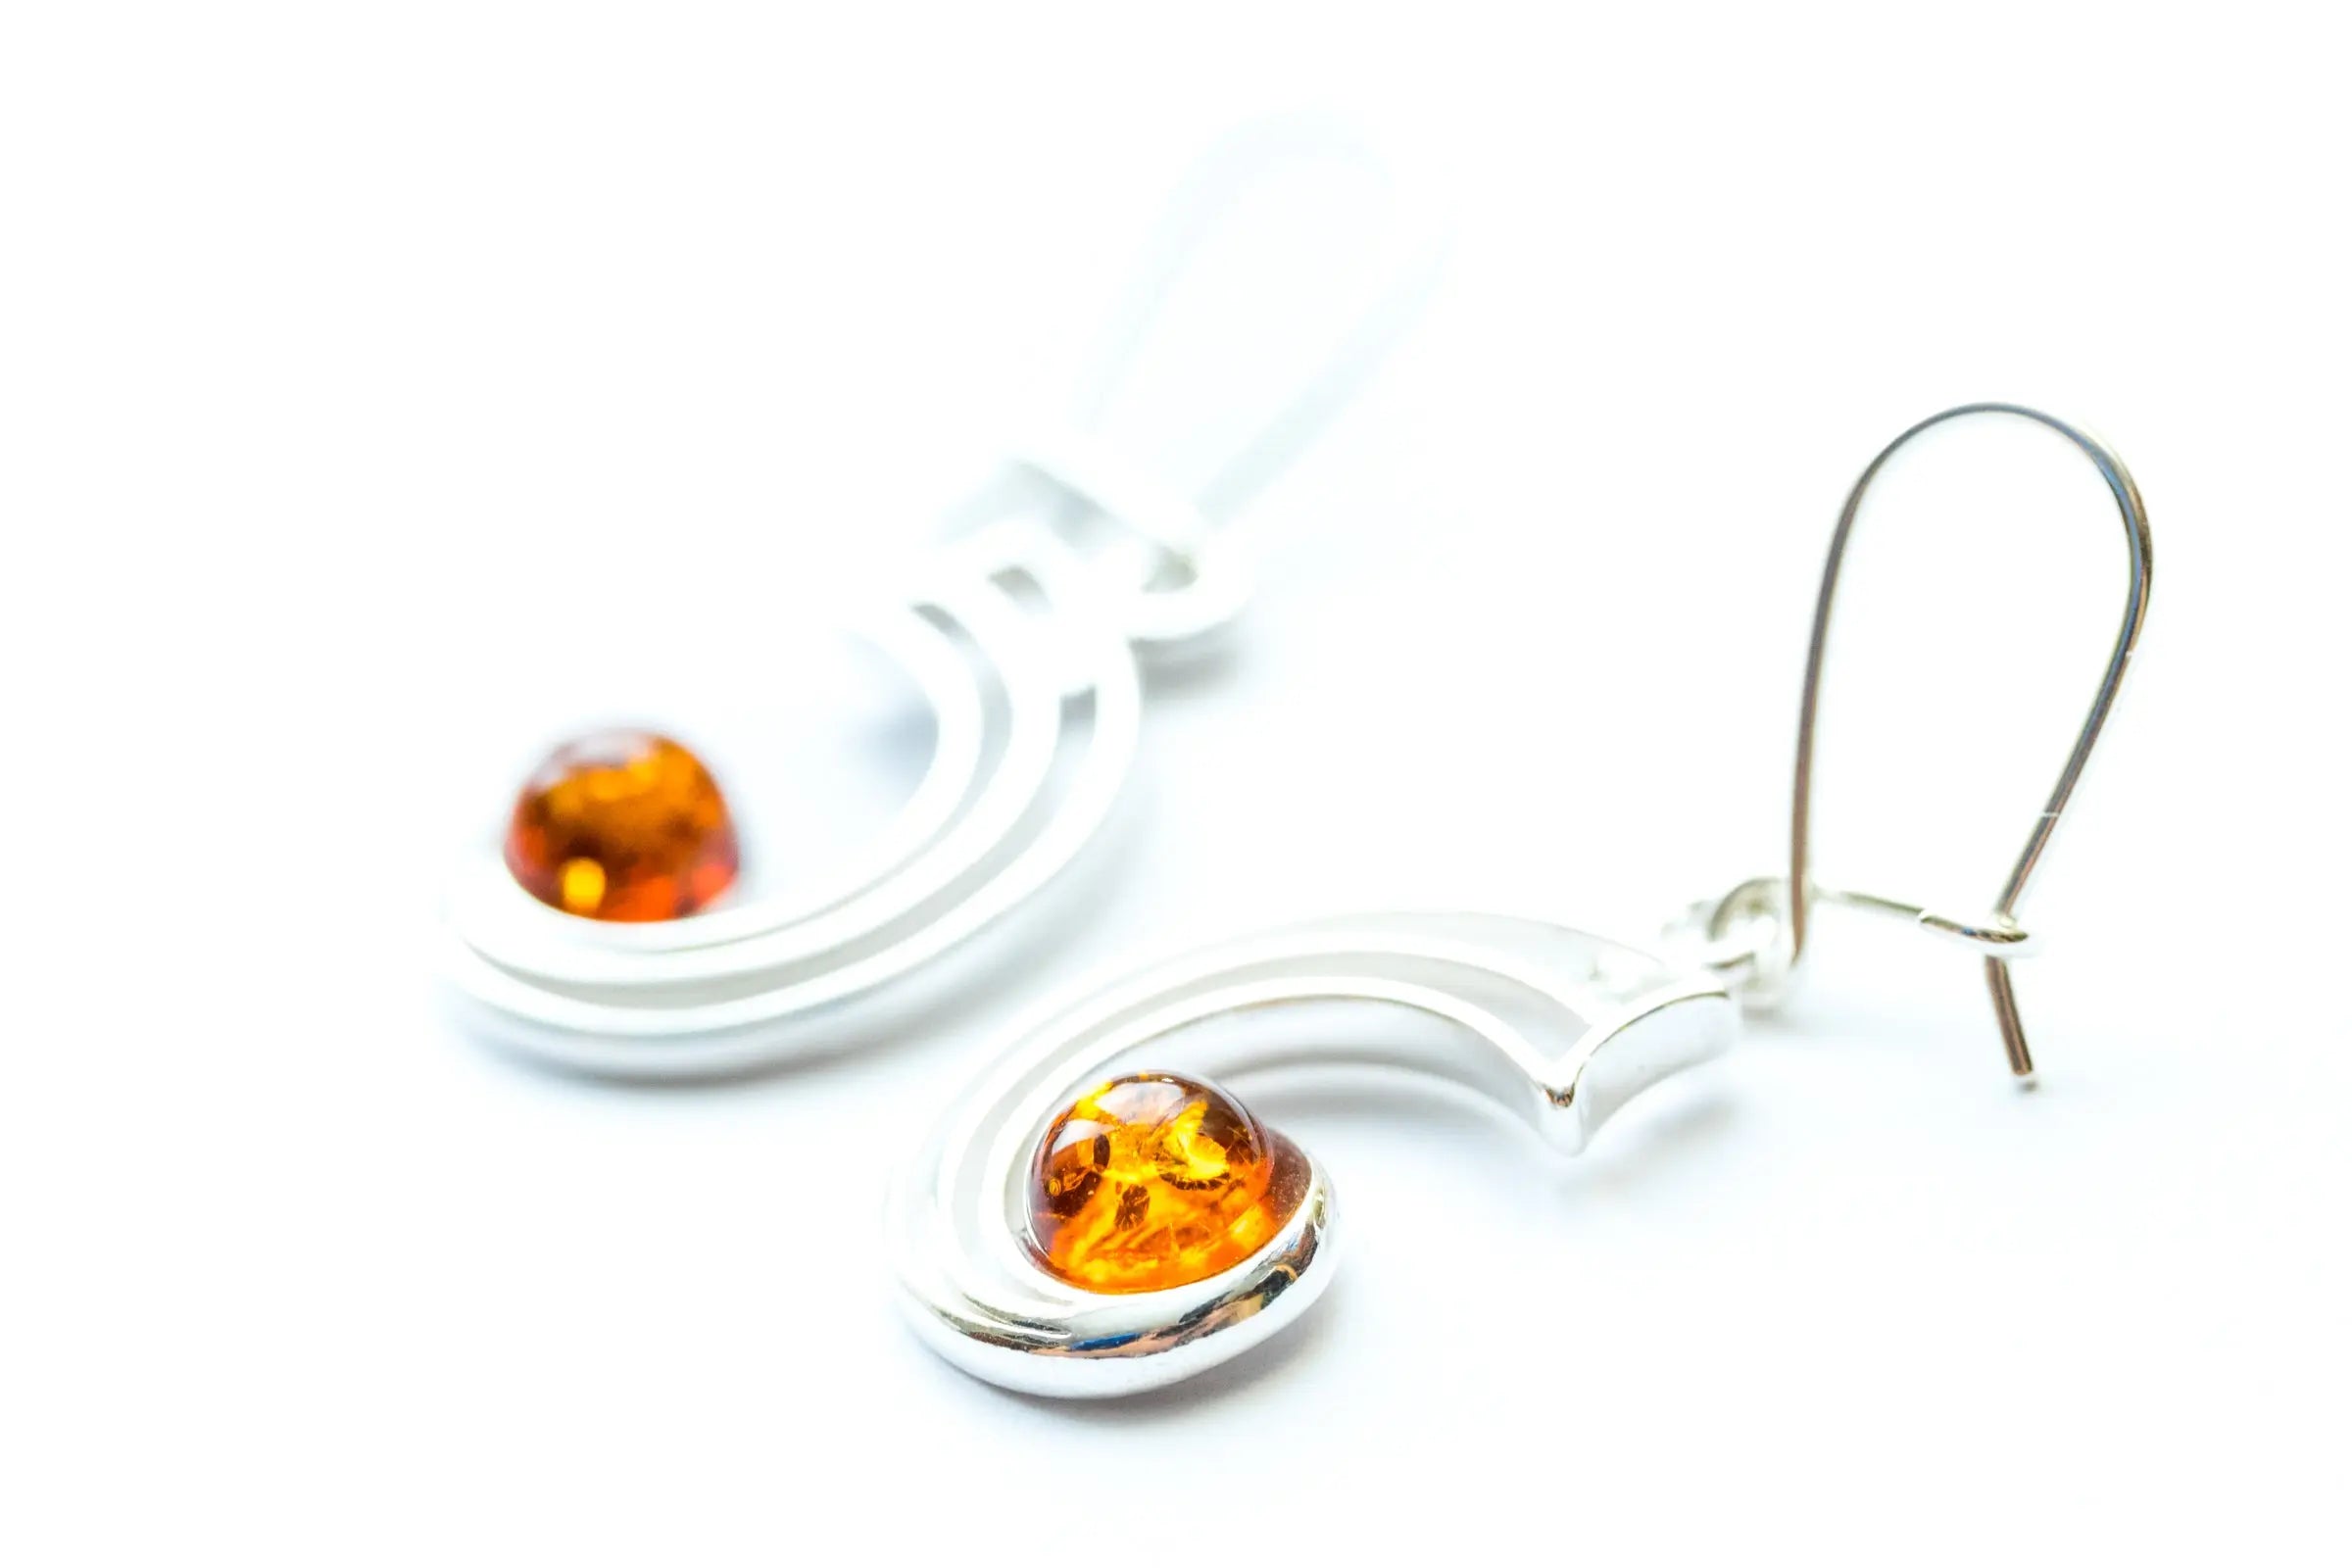 Modern Amber Orbit Earrings- Earrings- Baltic Beauty